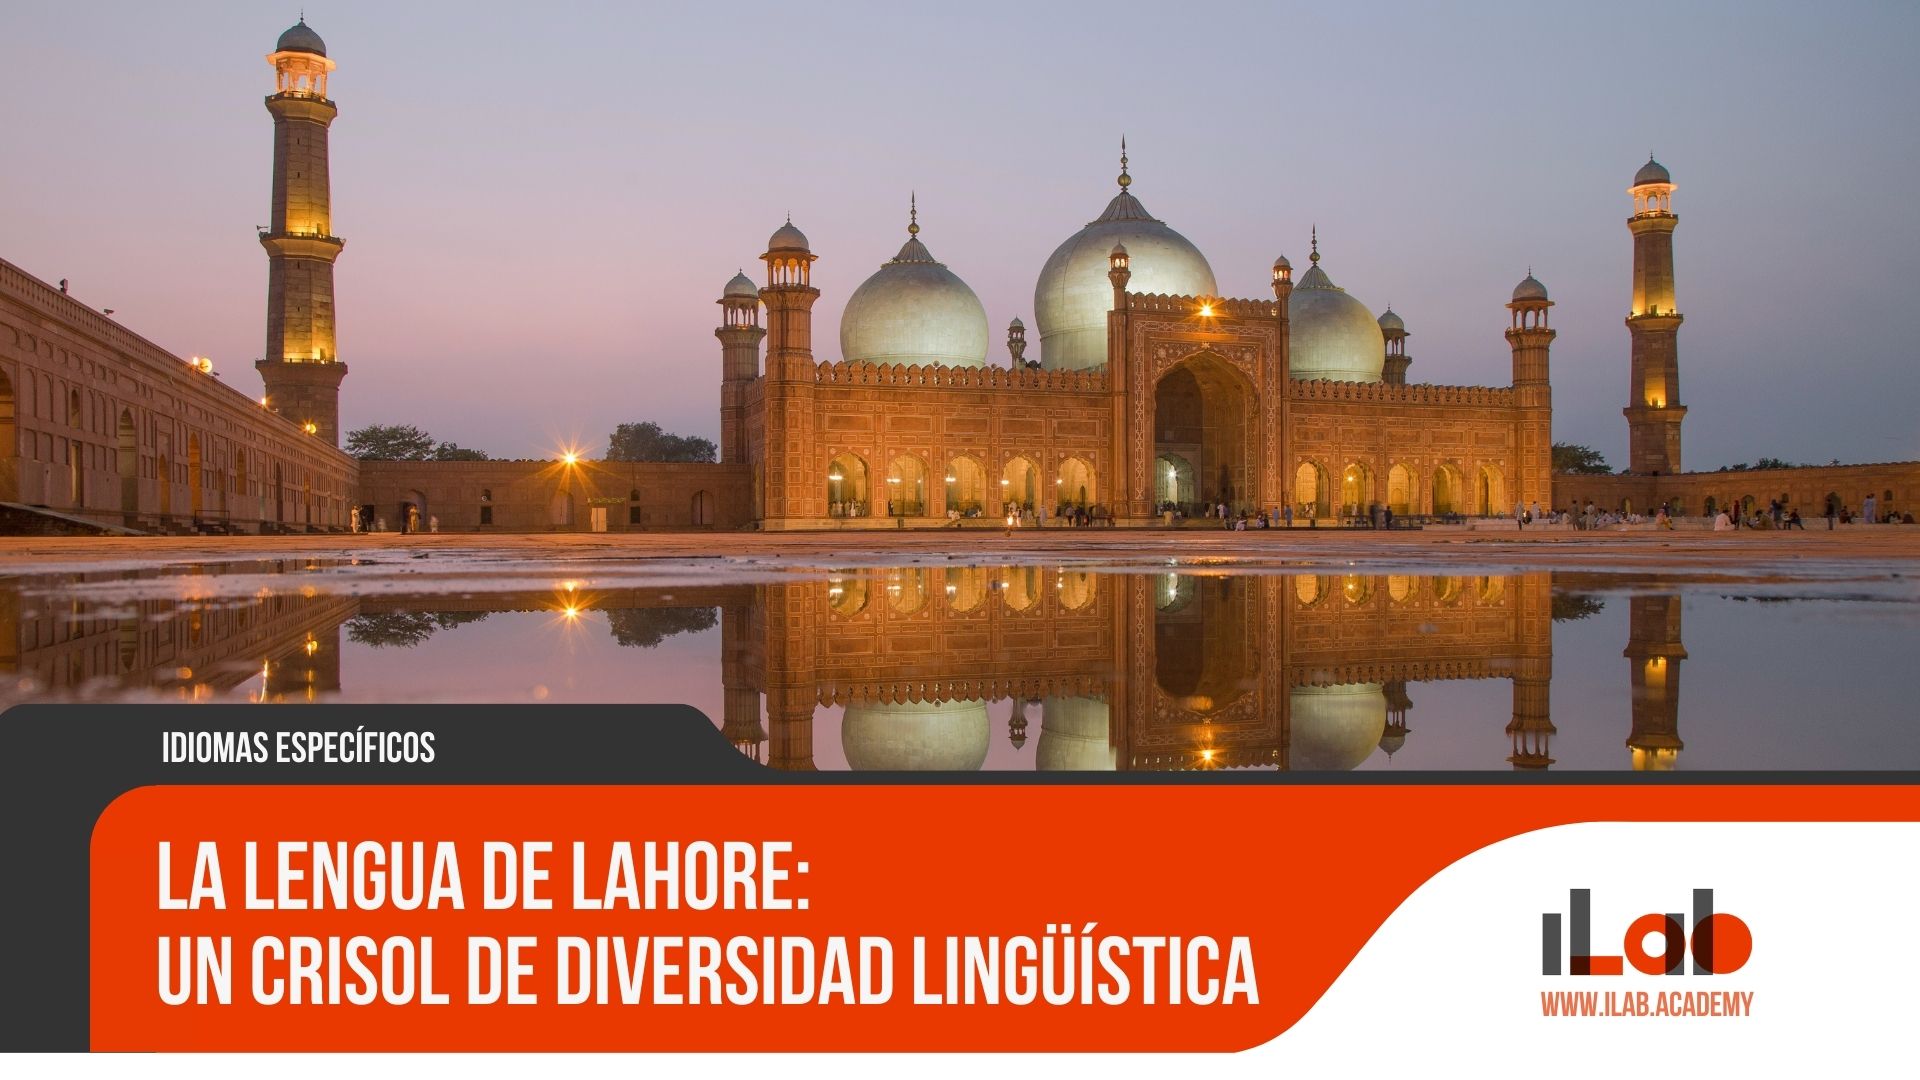 La lengua de Lahore: Un crisol de diversidad lingüística